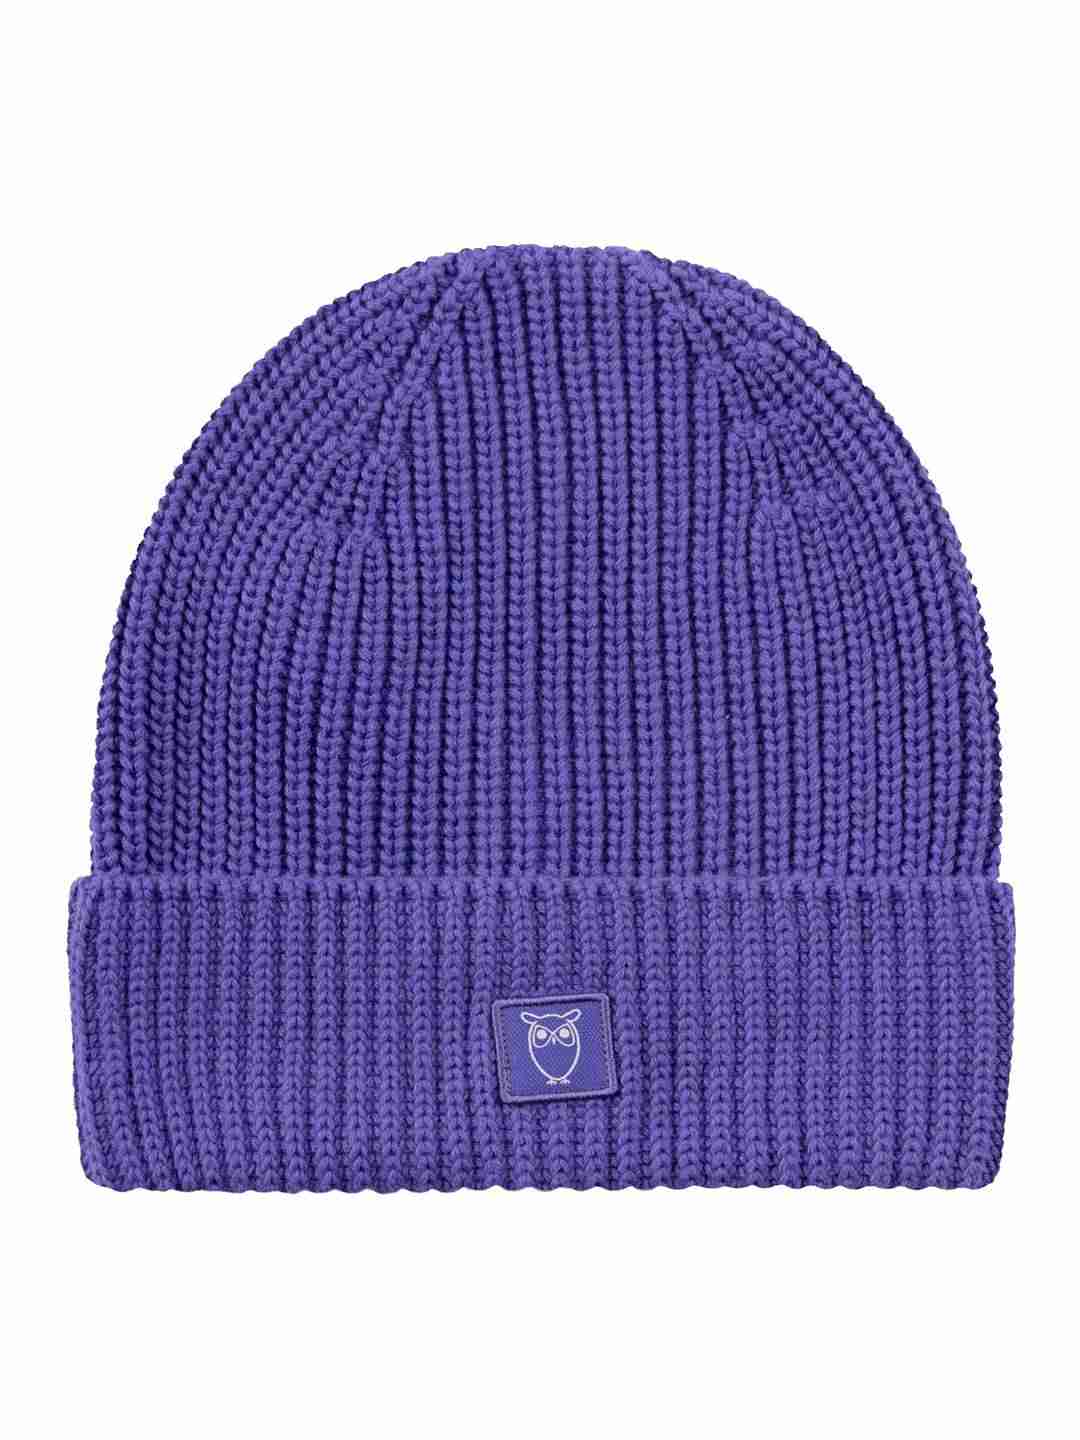 Mütze Rib hat deep purple von KnowledgeCotton Apparel